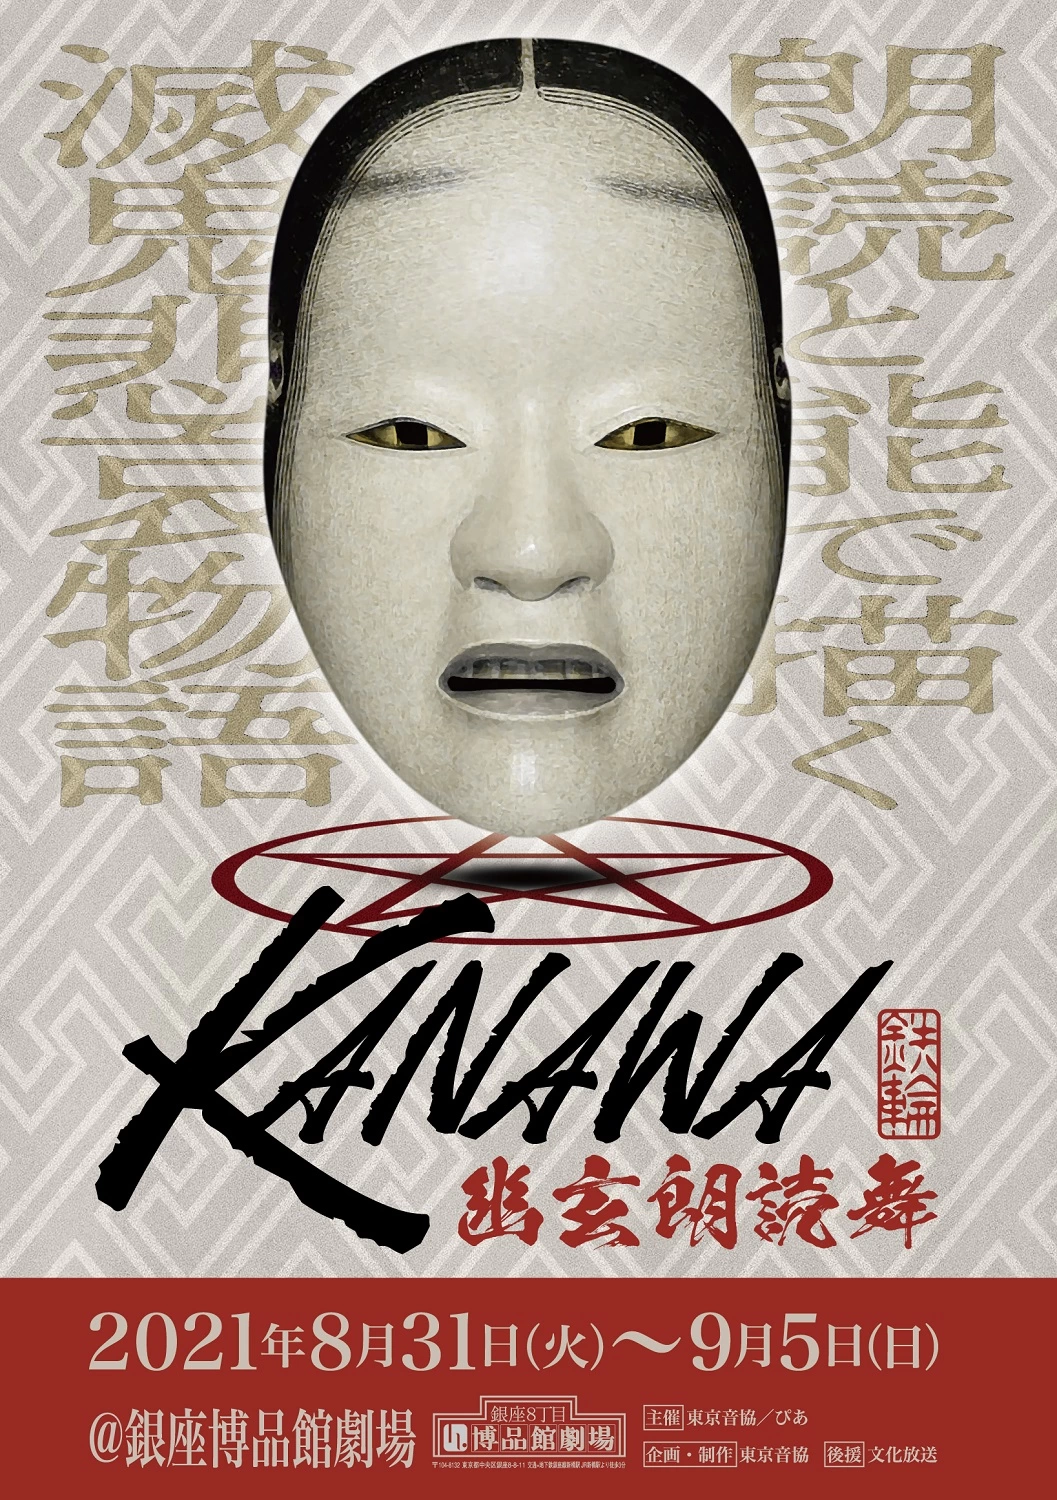 朗読と能で描く陰陽師と鬼の世界 幽玄朗読舞『KANAWA』